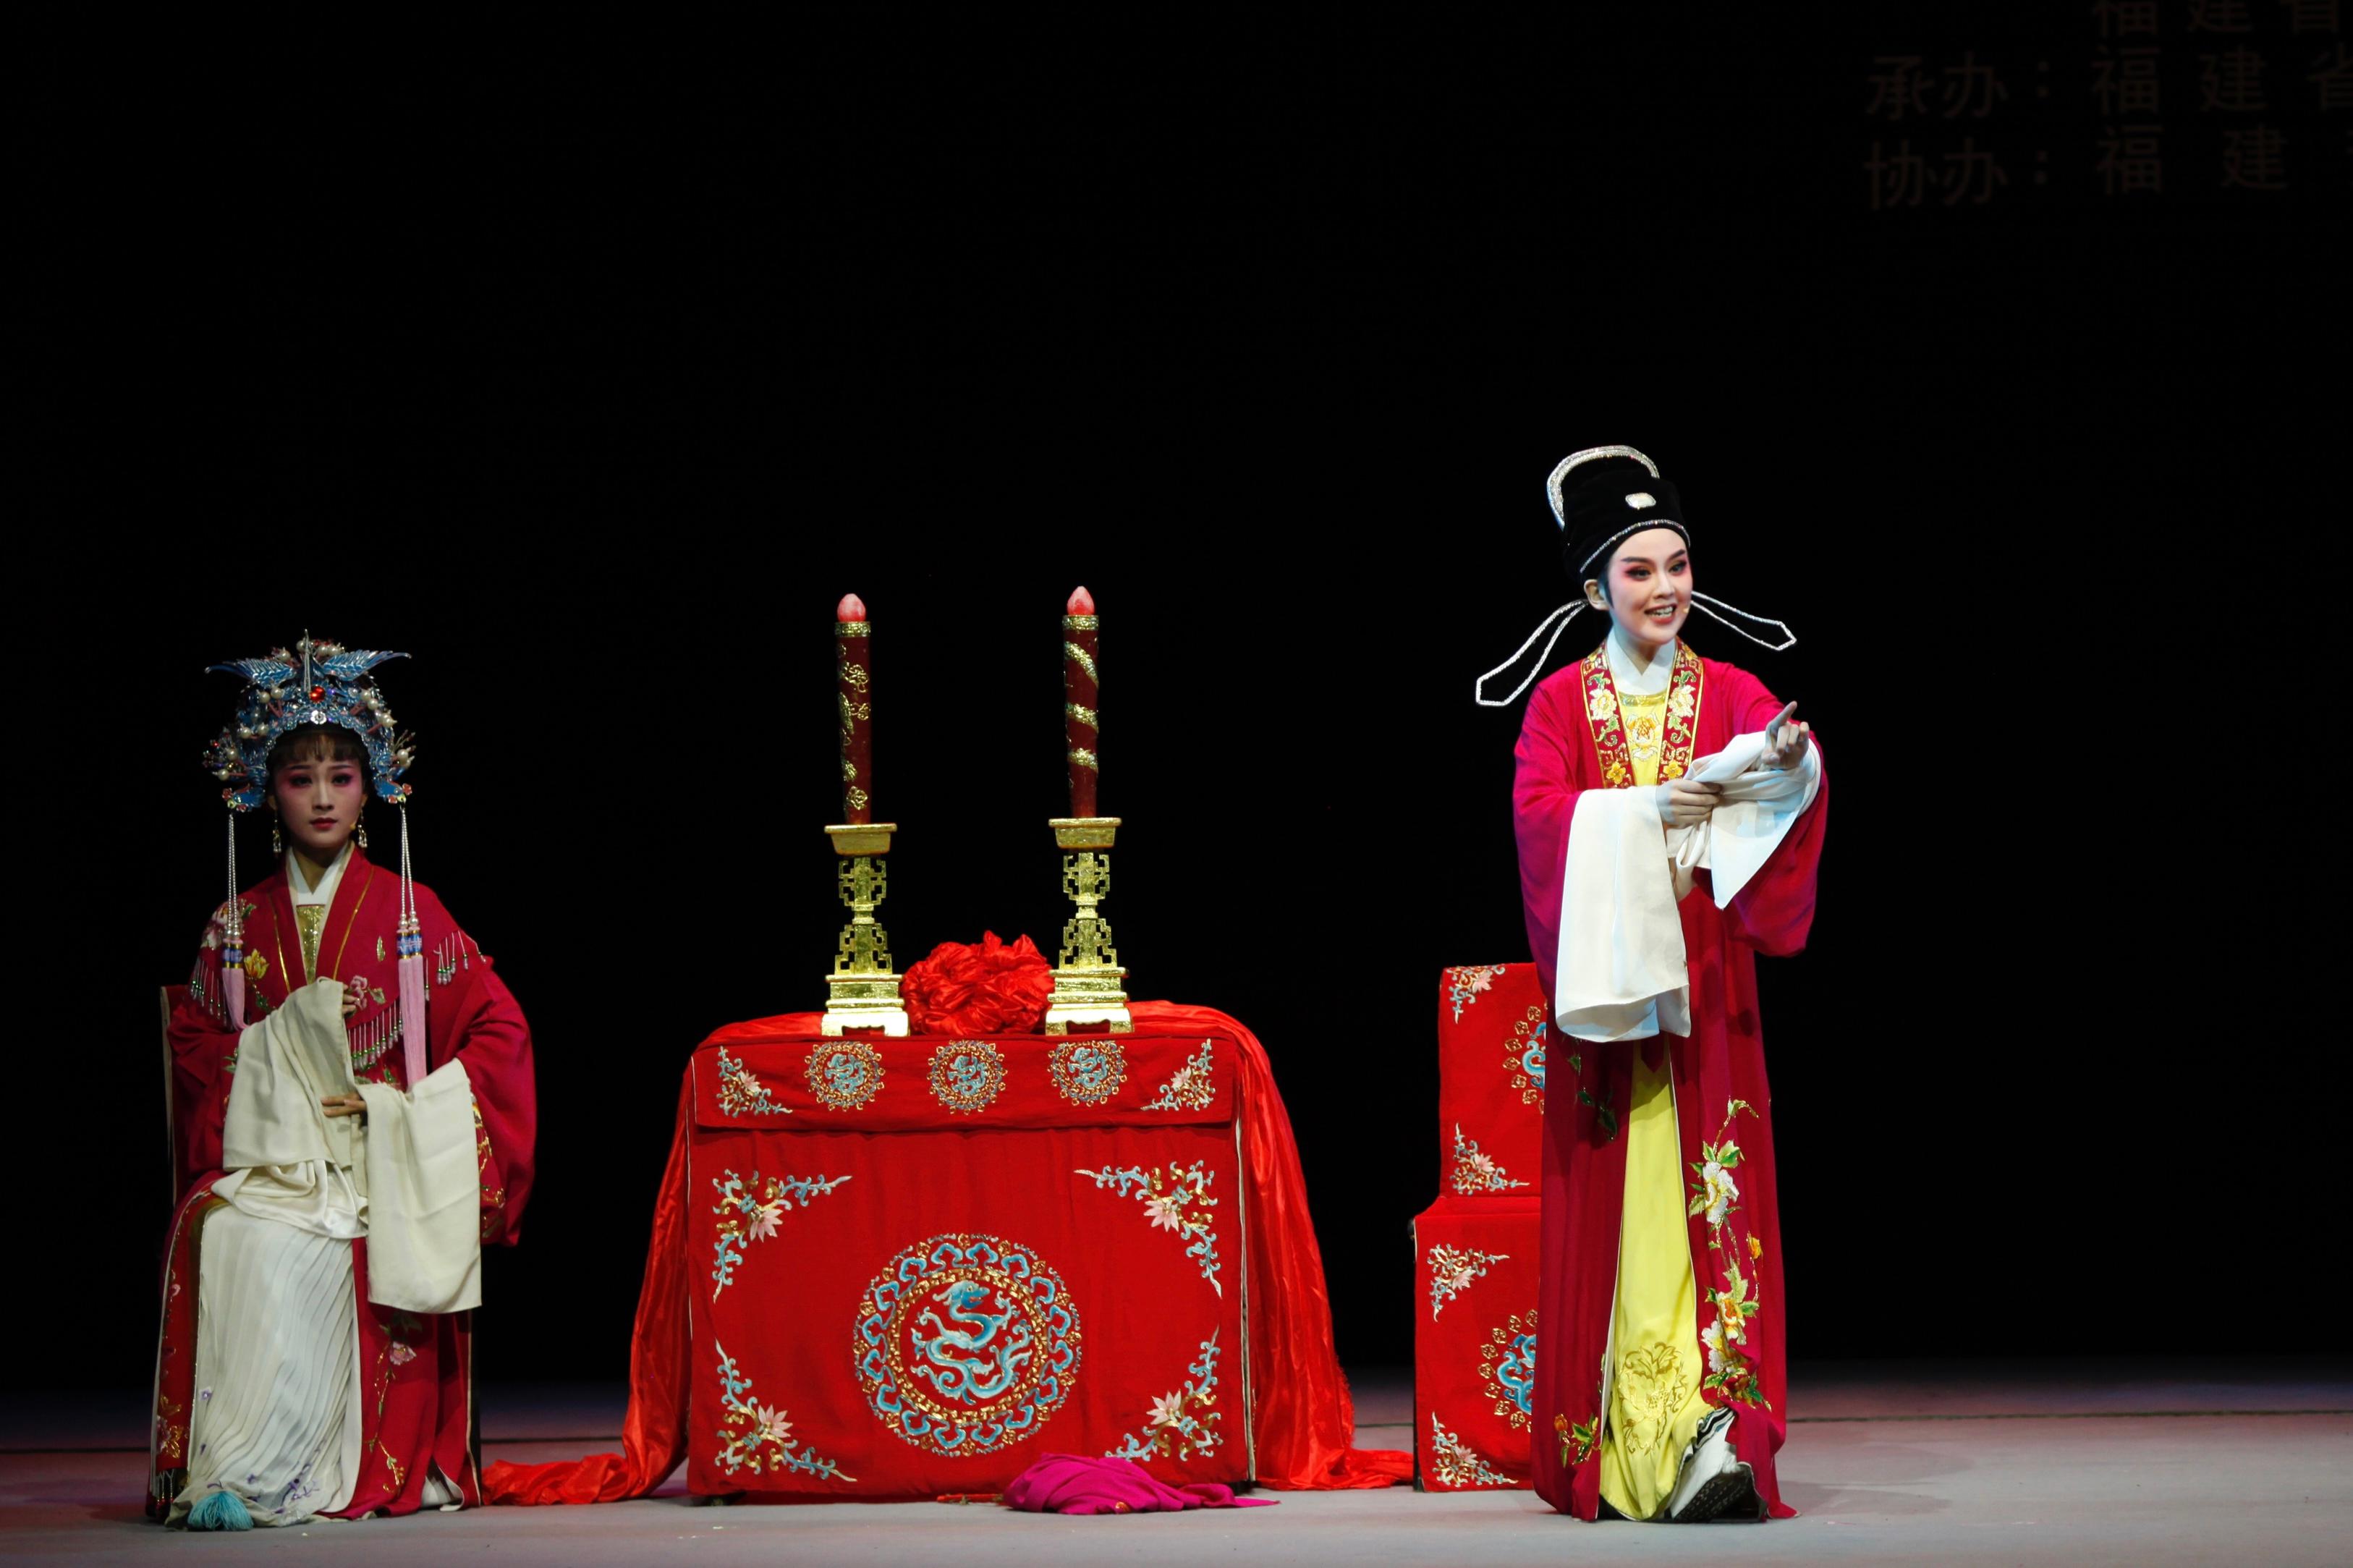 福建芳华越剧院于首届「中华文化节」上演三场精彩越剧。图示《盘妻索妻．洞房》剧照。
